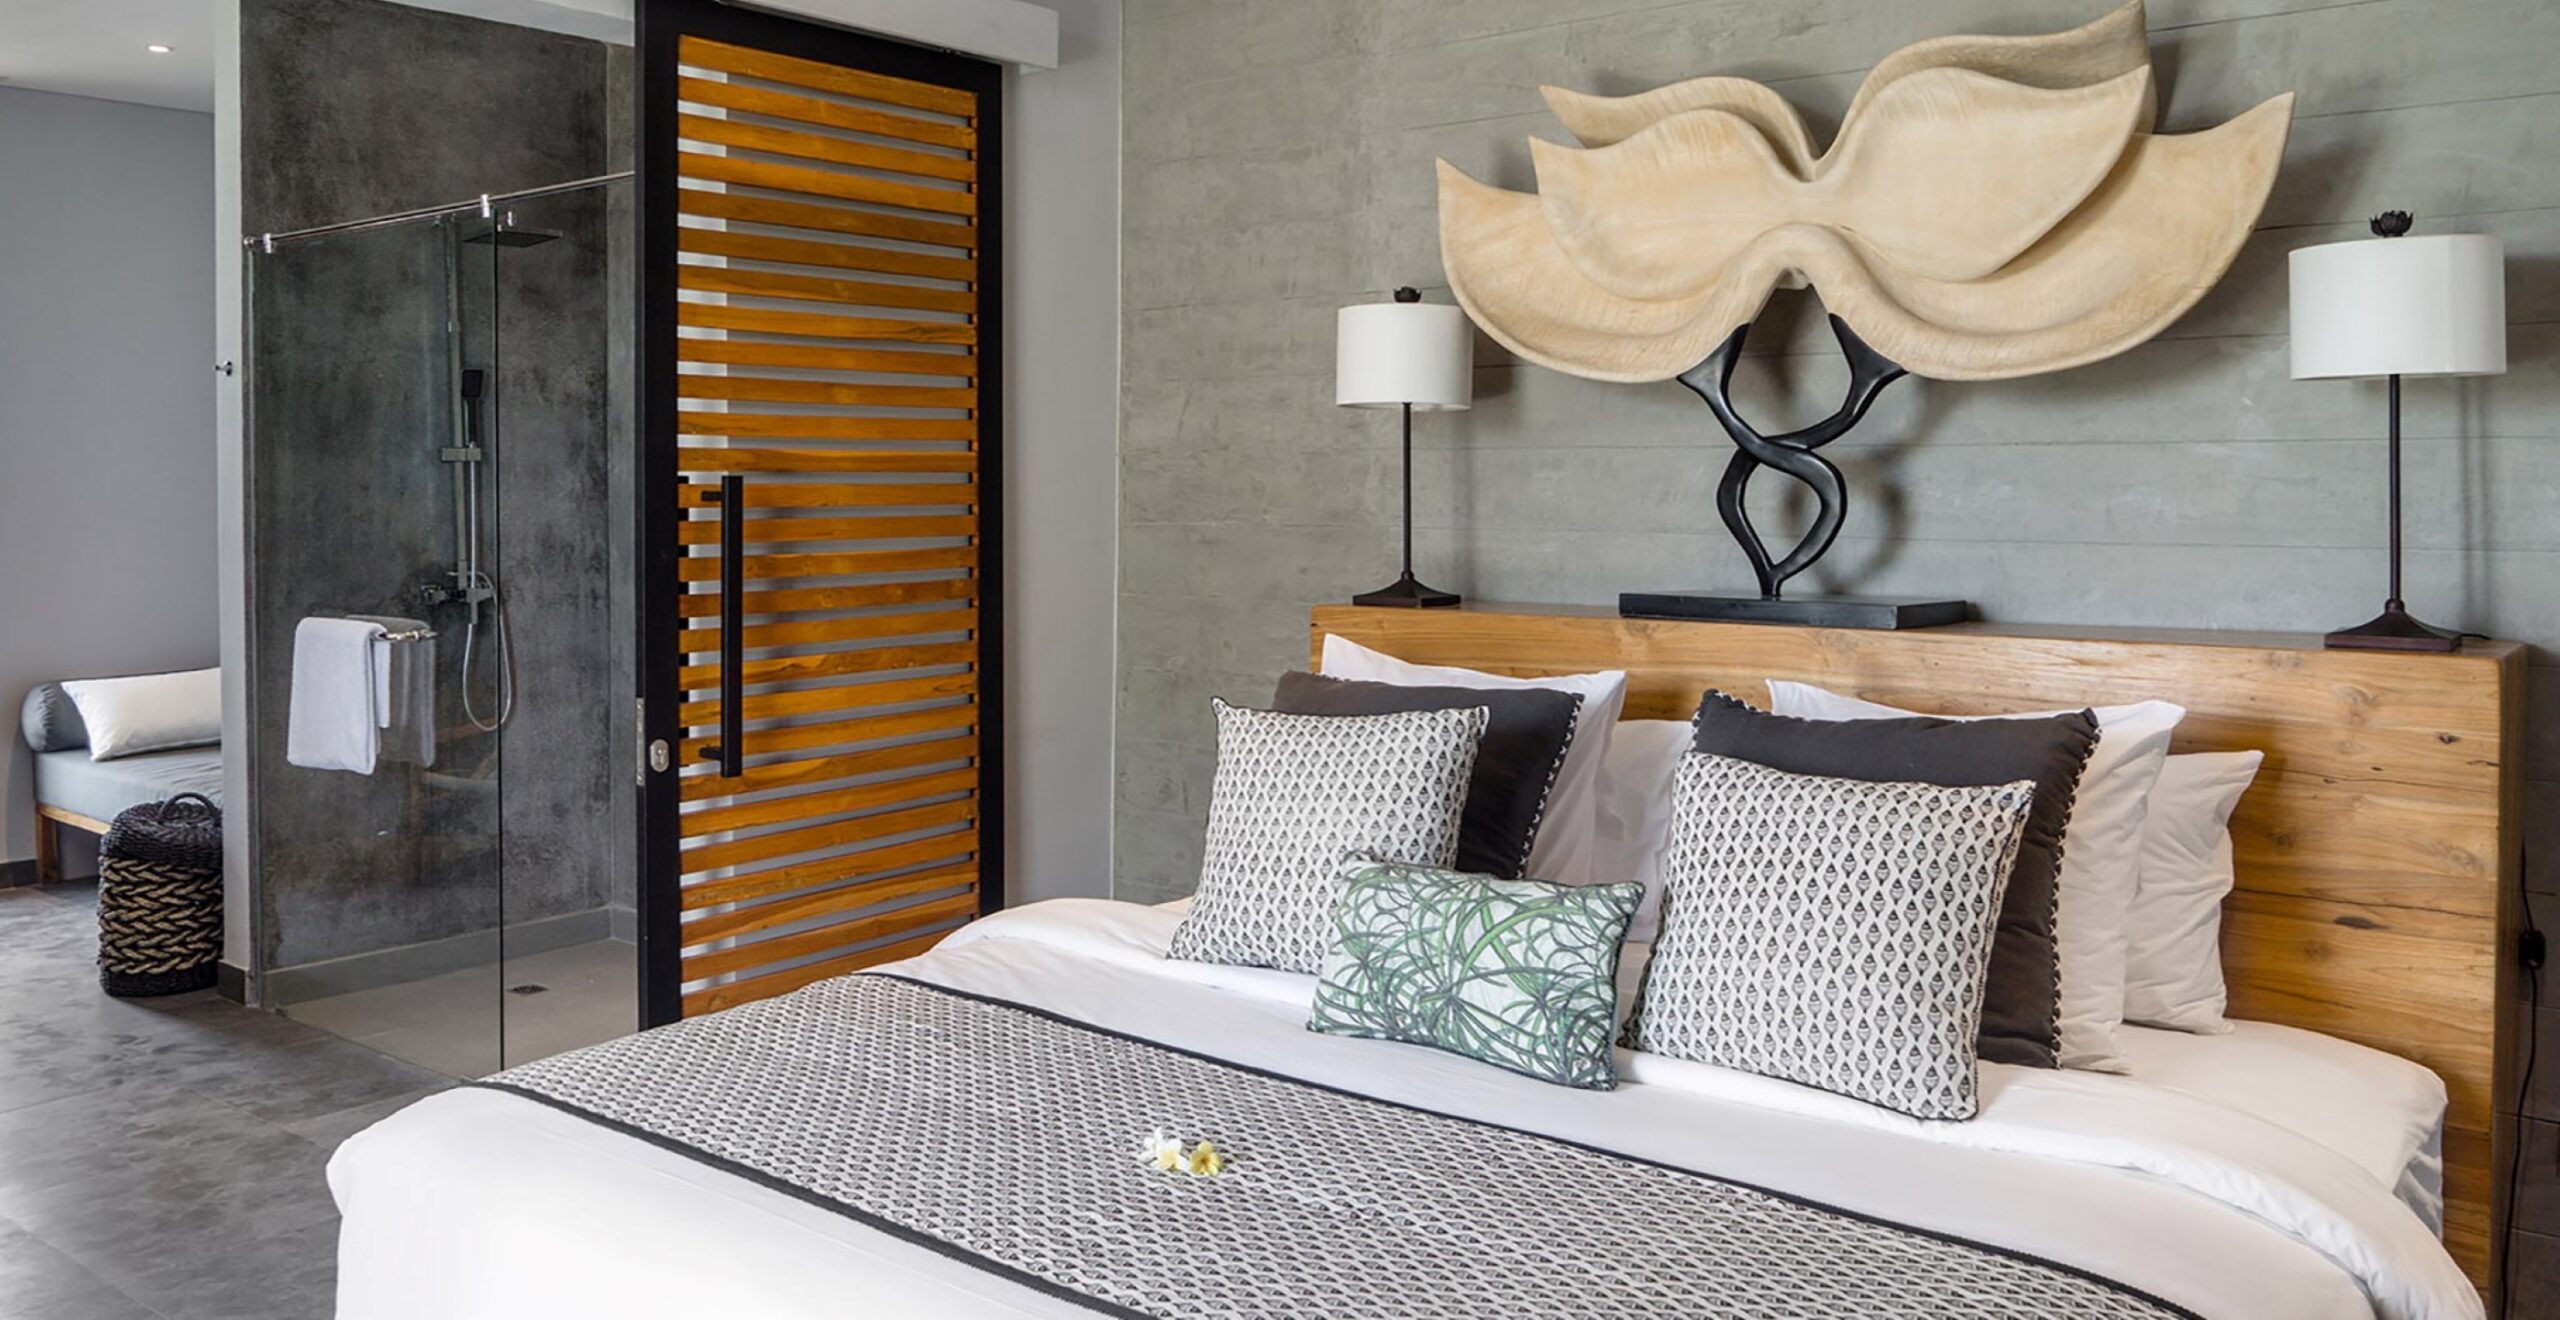 Villa Gu – Guest bedroom design